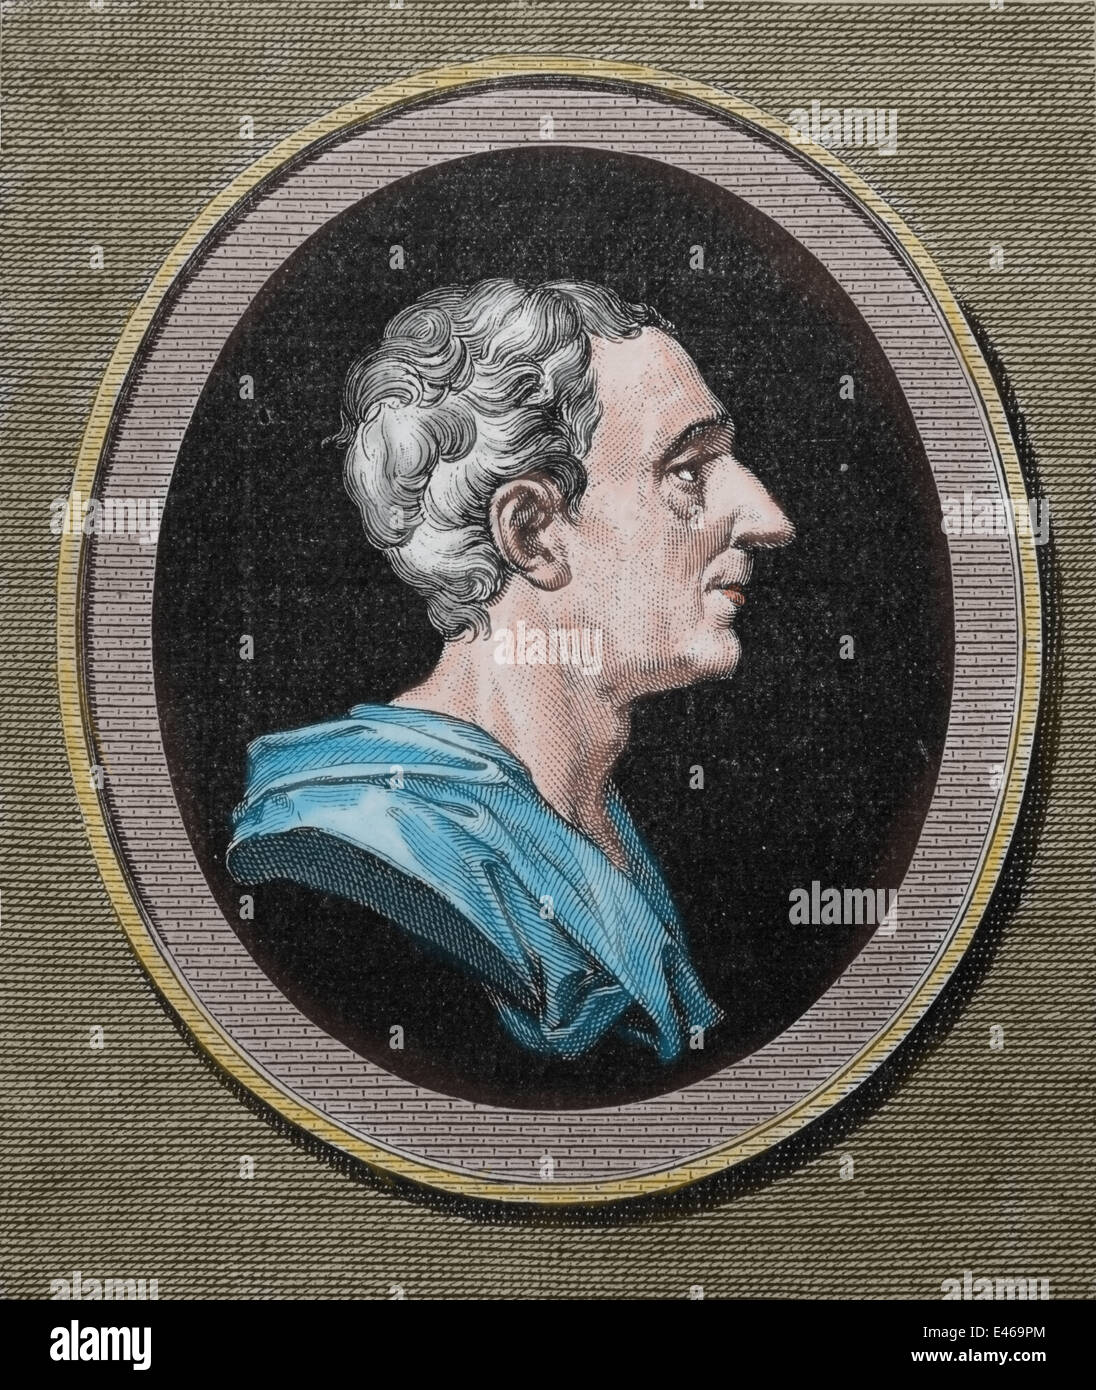 Montesquieu (1689-1755). Französischer Jurist und politischer Philosoph. Theorie: Gewaltenteilung. Zeitalter der Aufklärung. Stockfoto